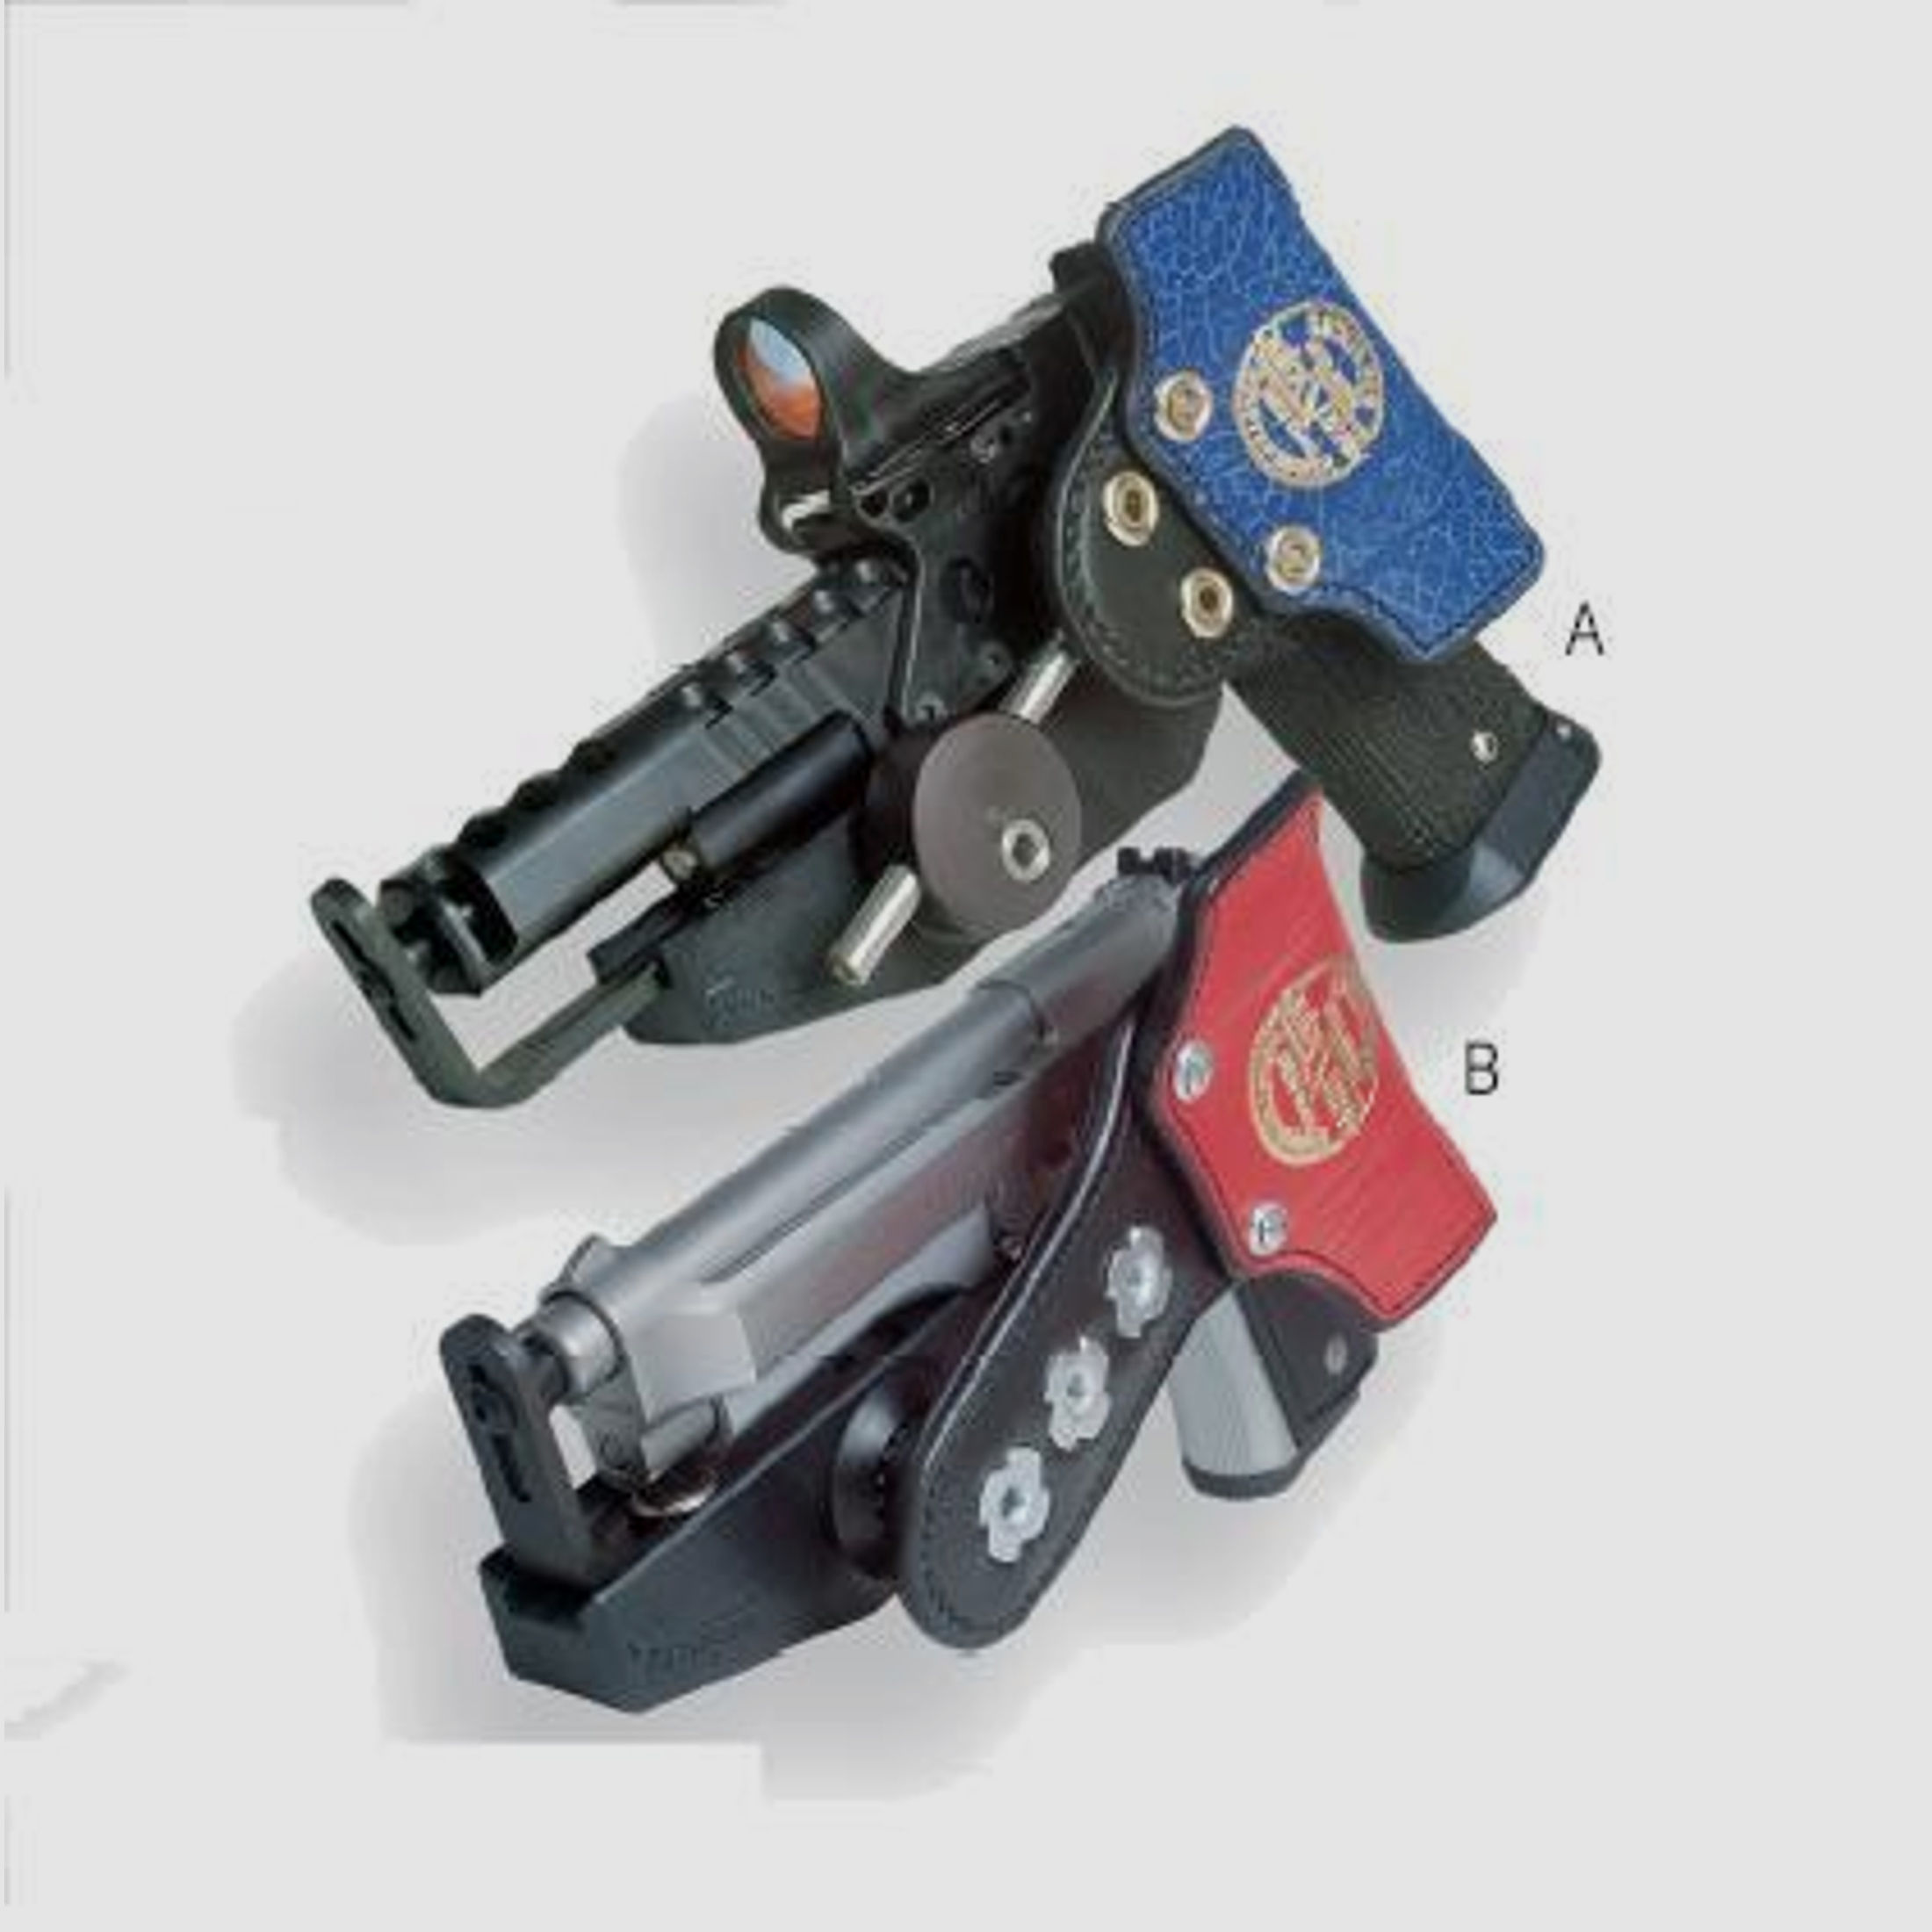 SICKINGER Holster (Wettkampf) f. Glock 17/34 u.a. 4,5-6,5' 63004 -SpeedMachine 3D schwarz